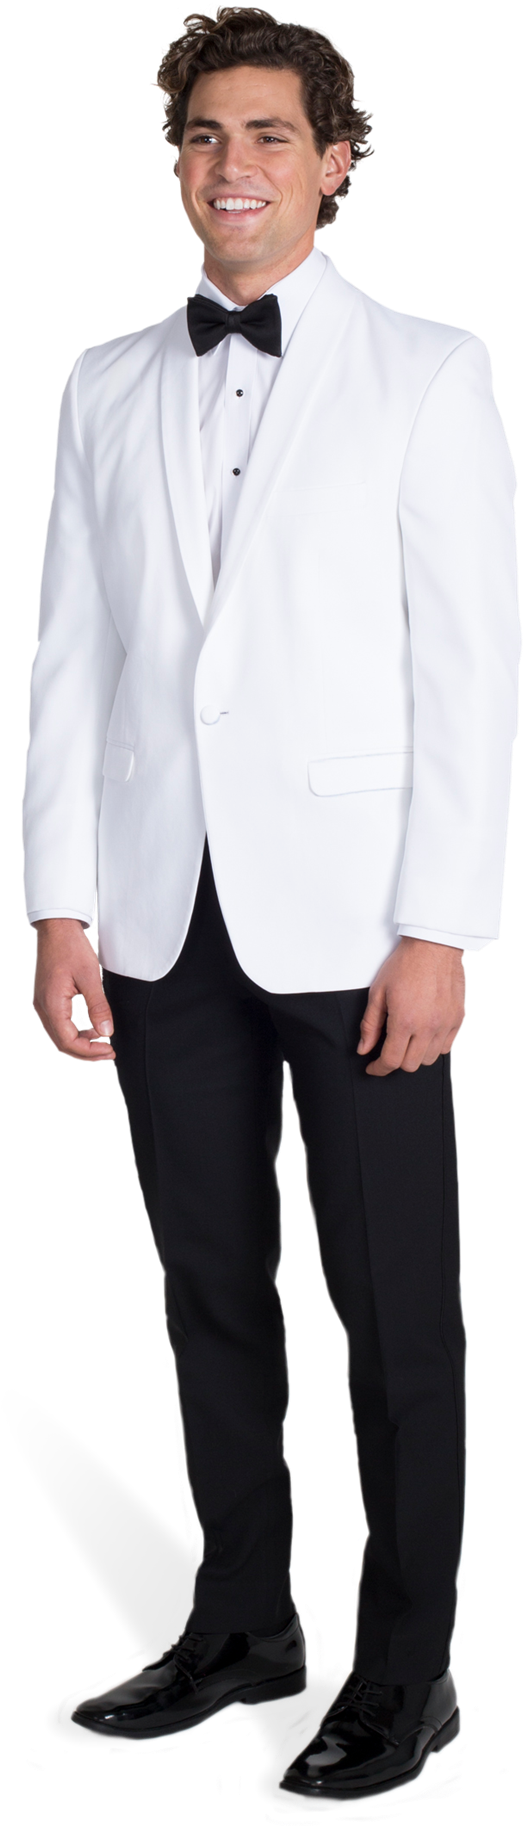 Elegant White Tuxedo Portrait PNG